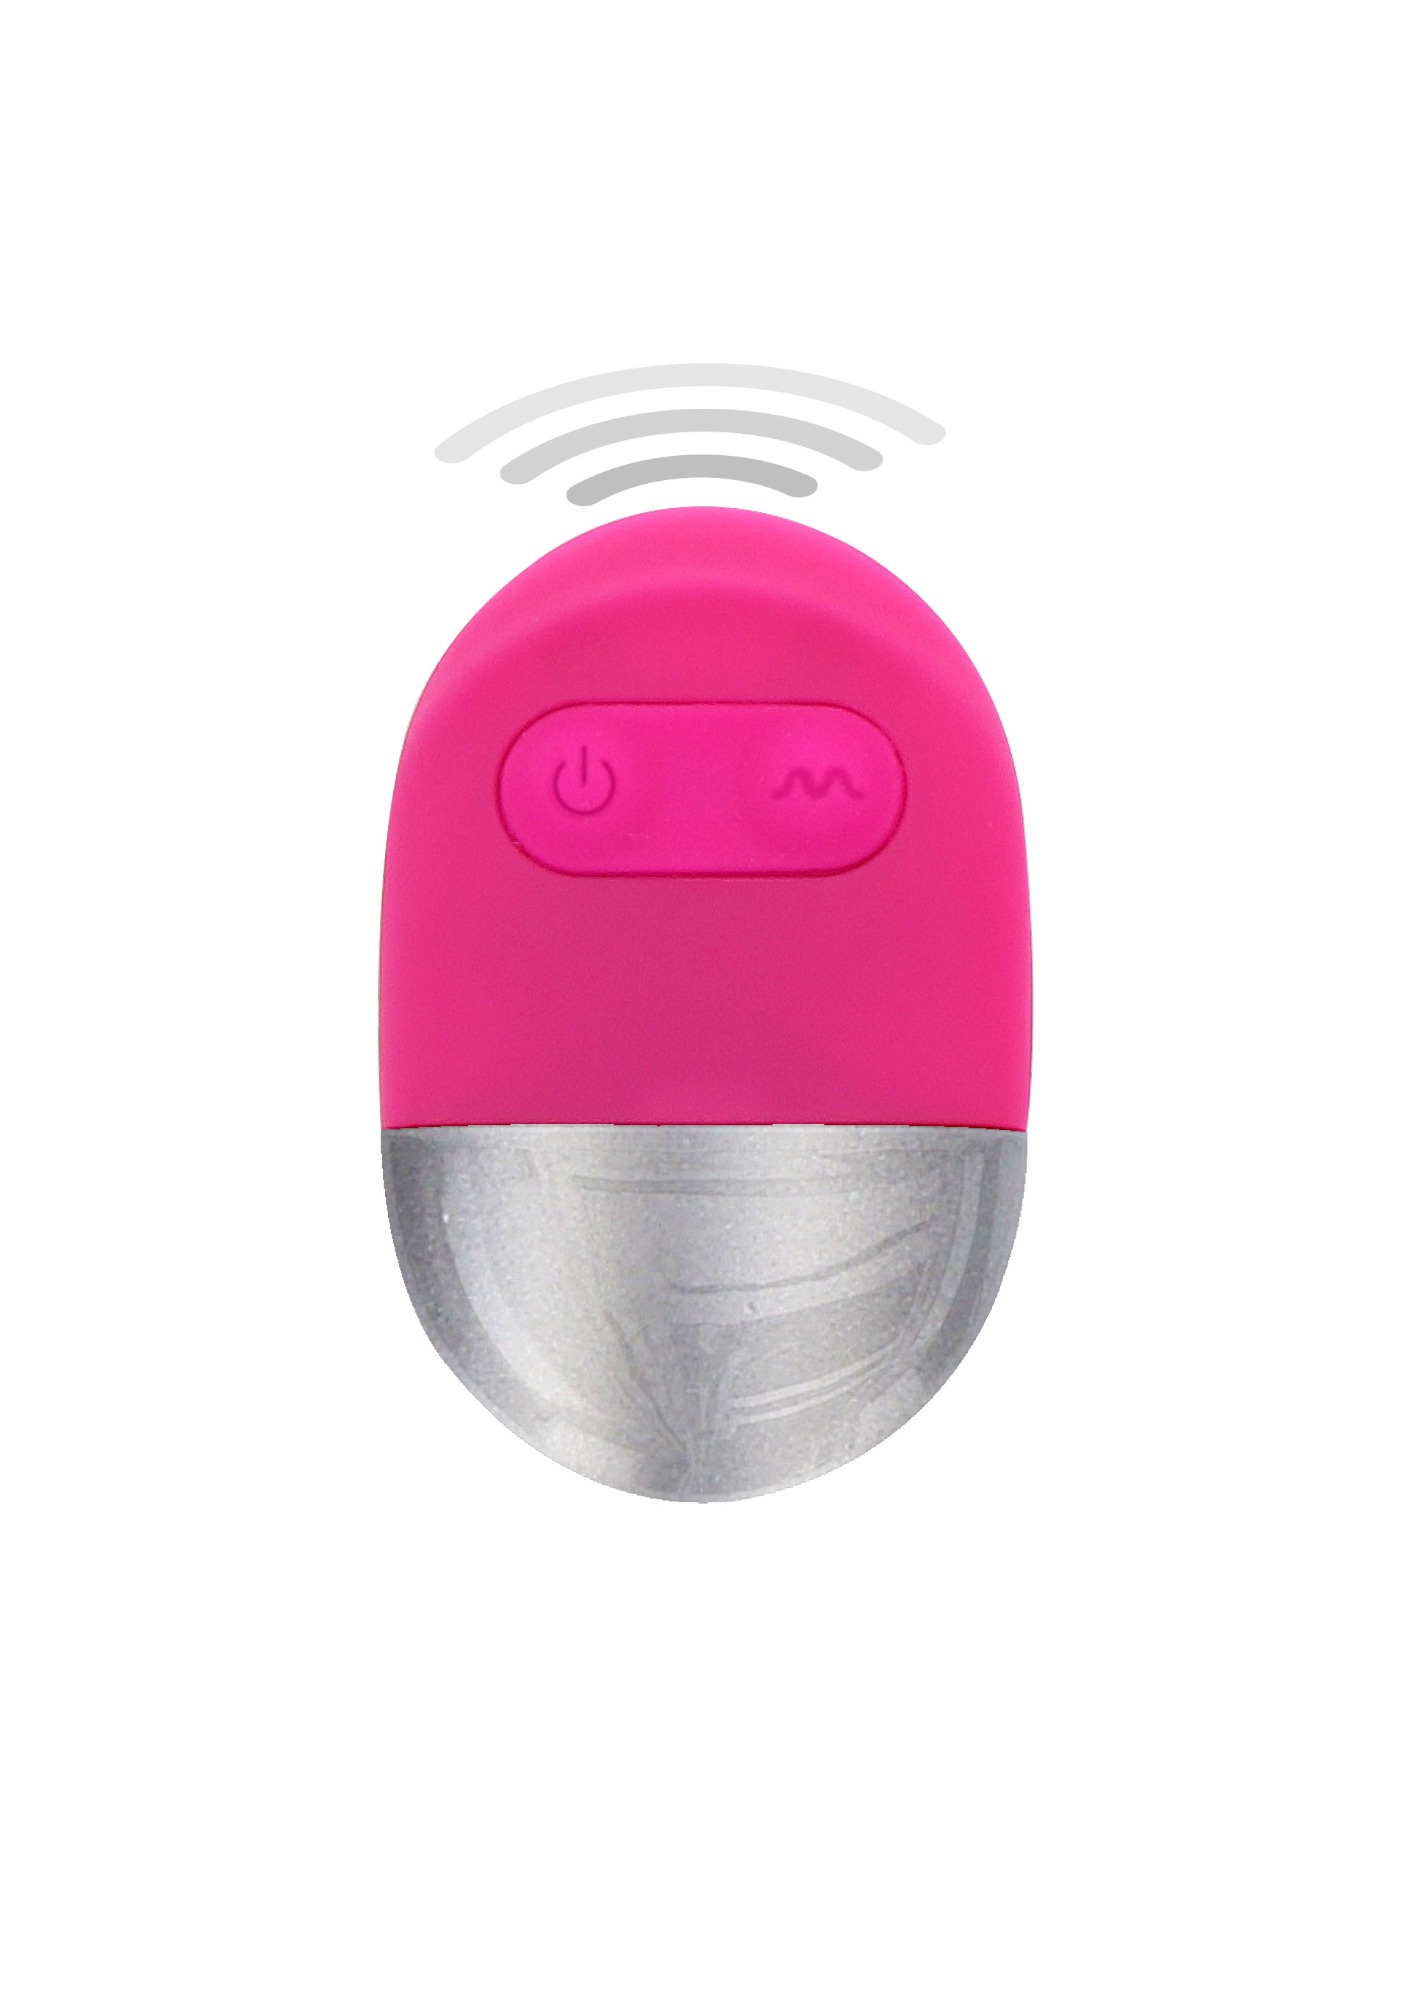 Ou Vibrator Funky Remote Egg 10 Moduri Vibratii Silicon Roz